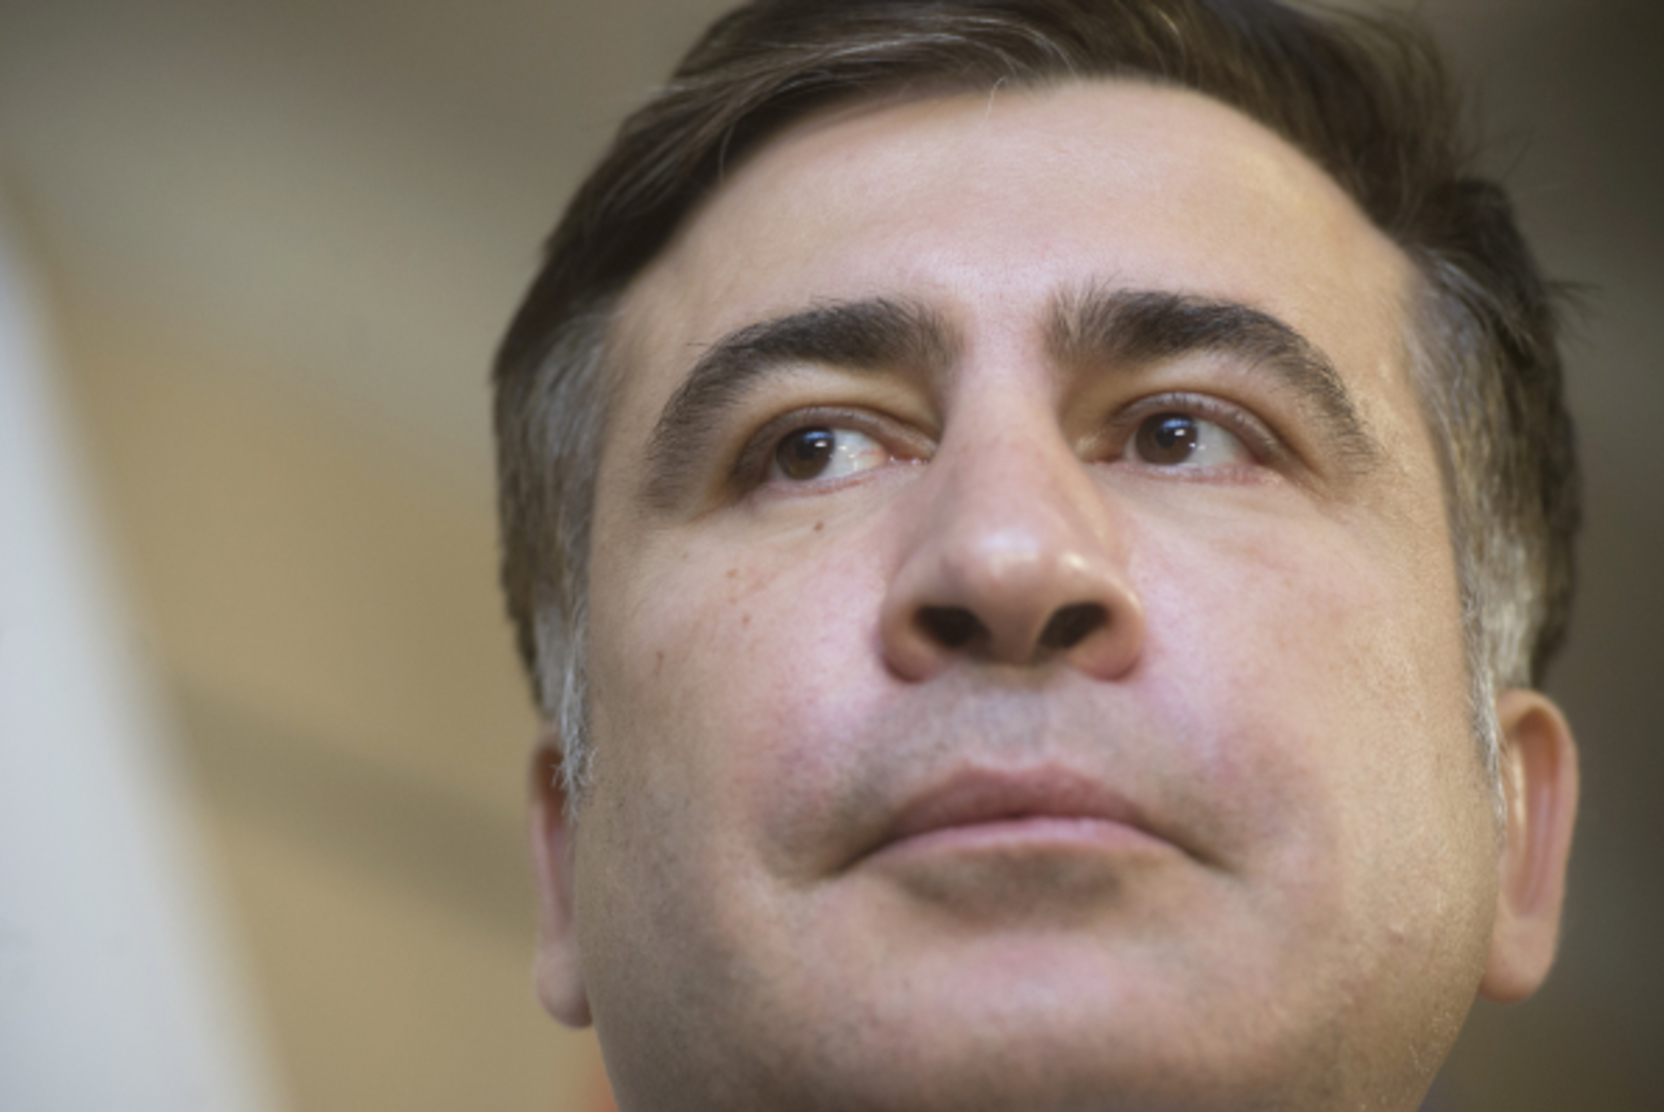 Саакашвили отказался от экспертизы на наличие в его организме тяжёлых металлов